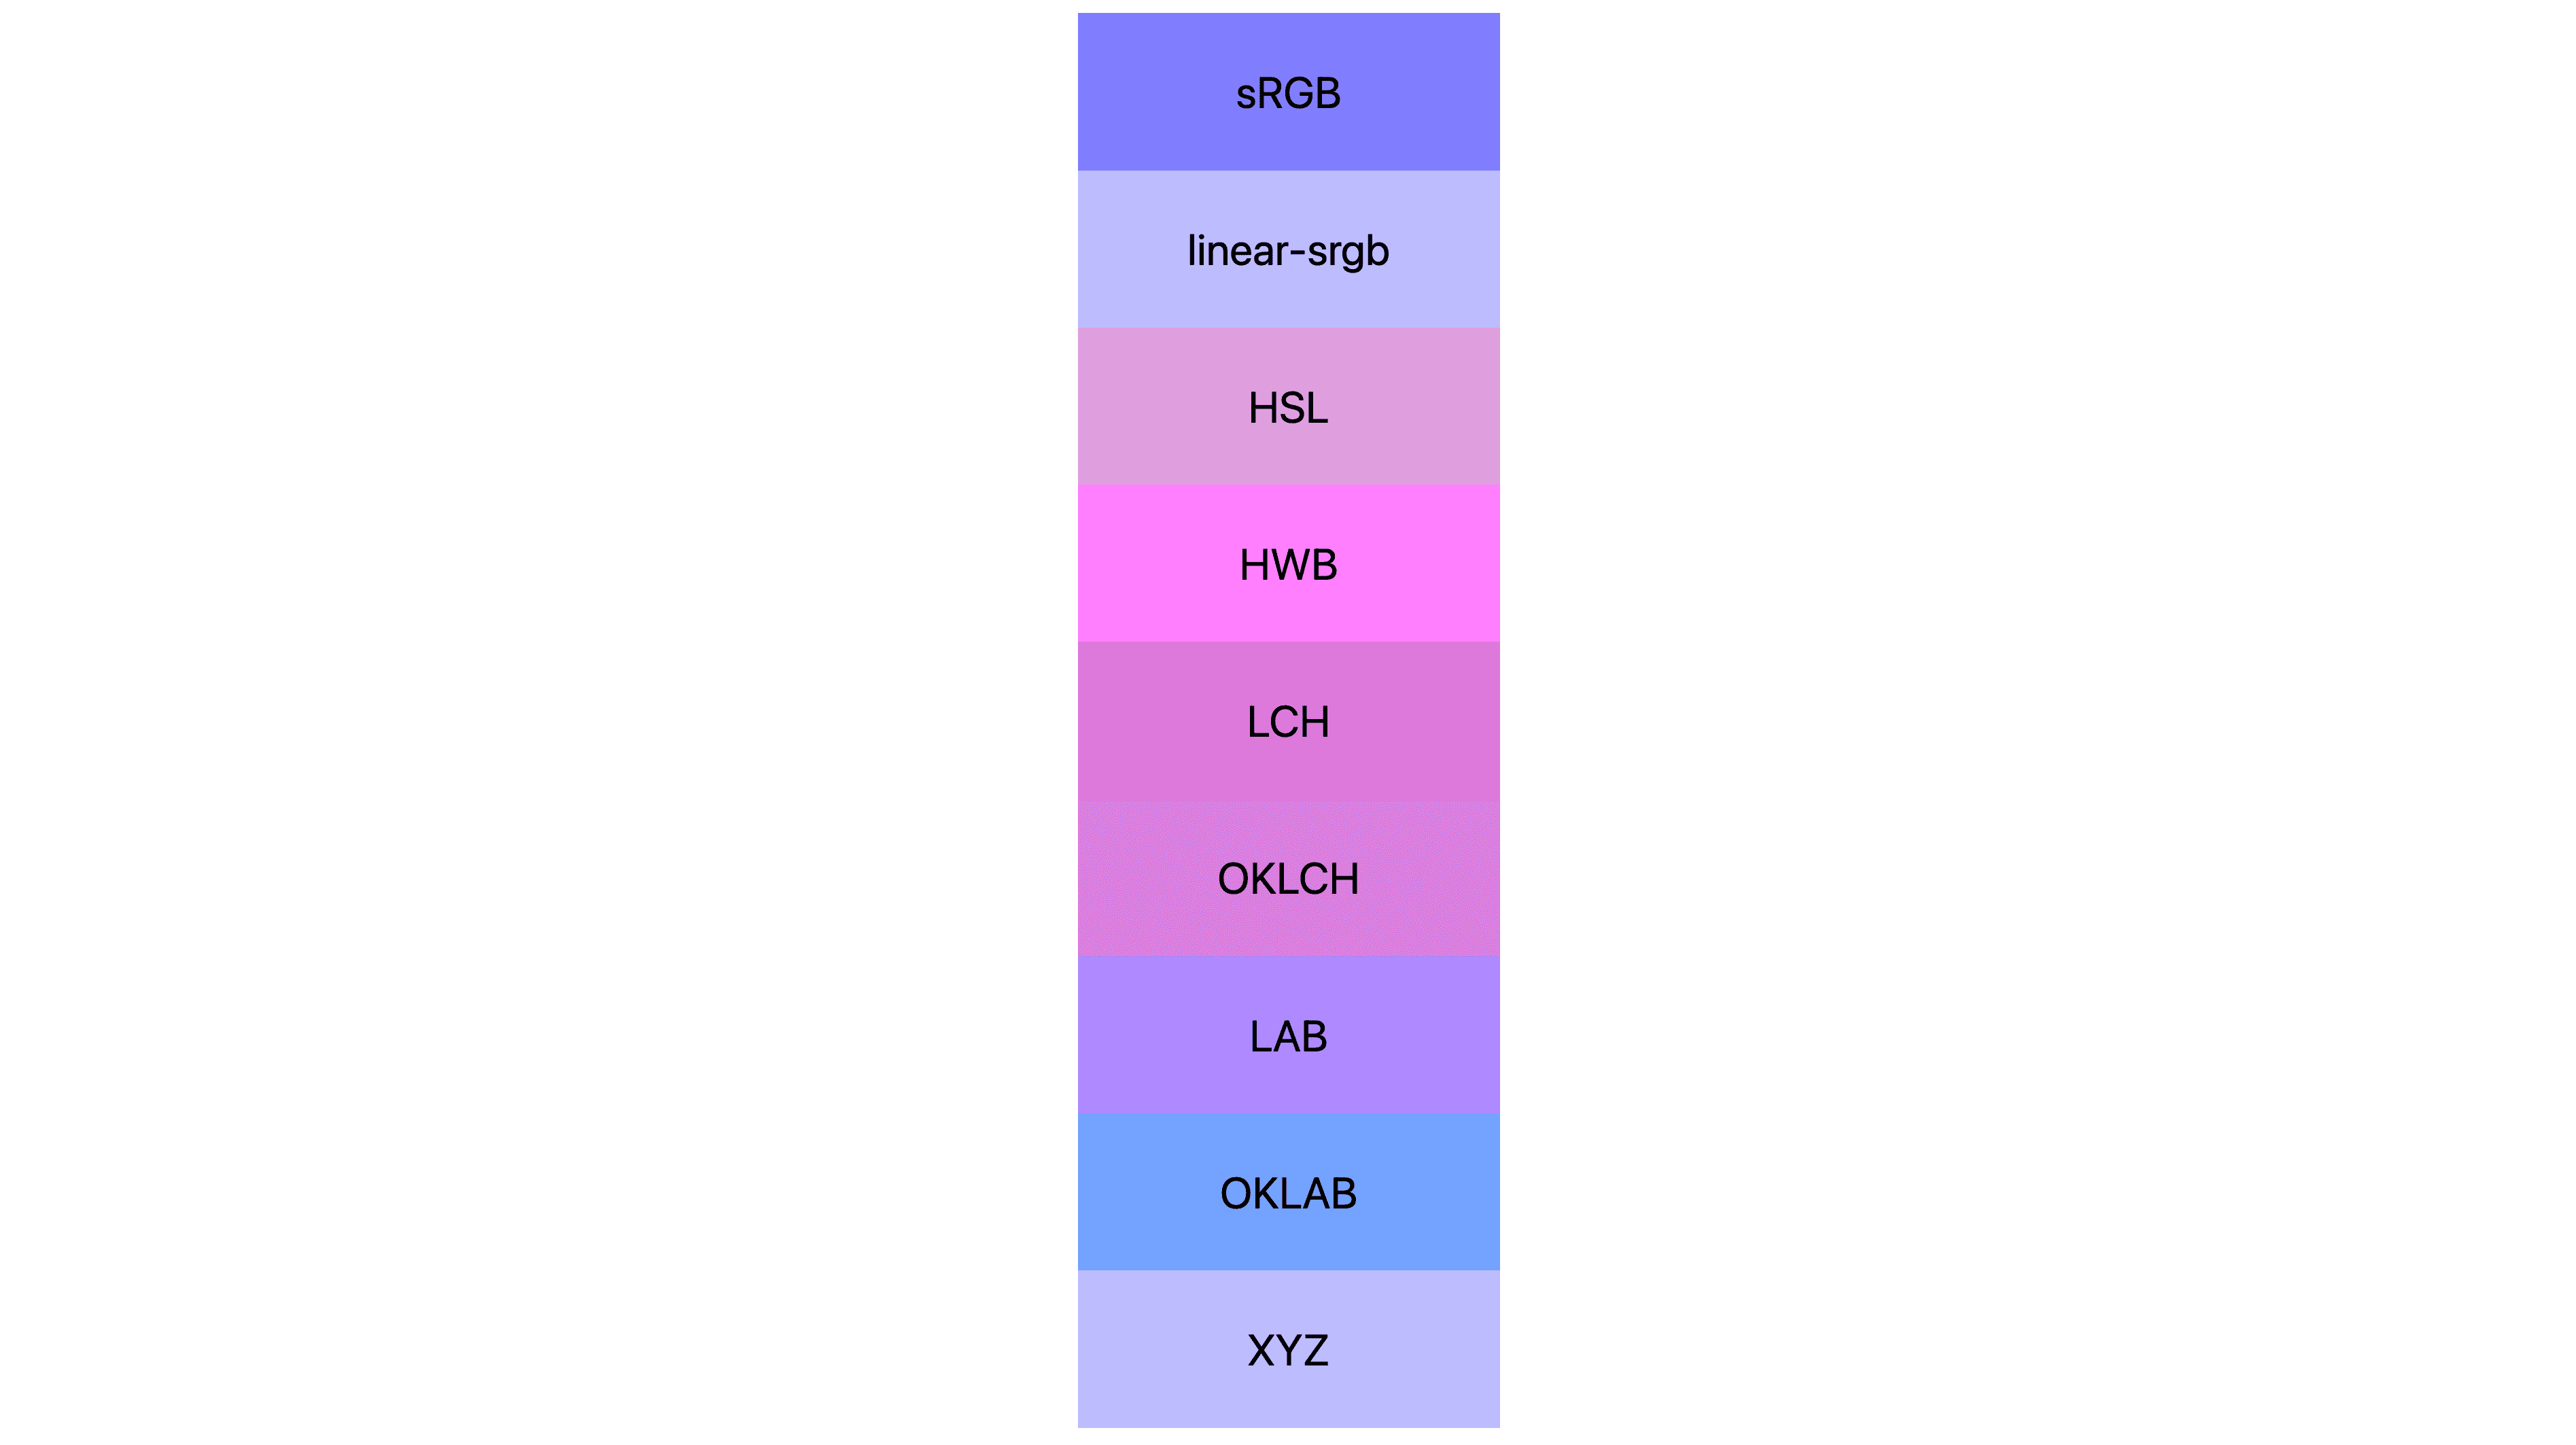 ช่องว่าง 7 สี (srgb, linear-srgb, lch, oklch, lab, oklab, xyz) แต่ละรายการแสดงผลลัพธ์แตกต่างกัน หลายสีเป็นสีชมพูหรือม่วง แต่บางส่วนยังเป็นสีน้ำเงินอยู่